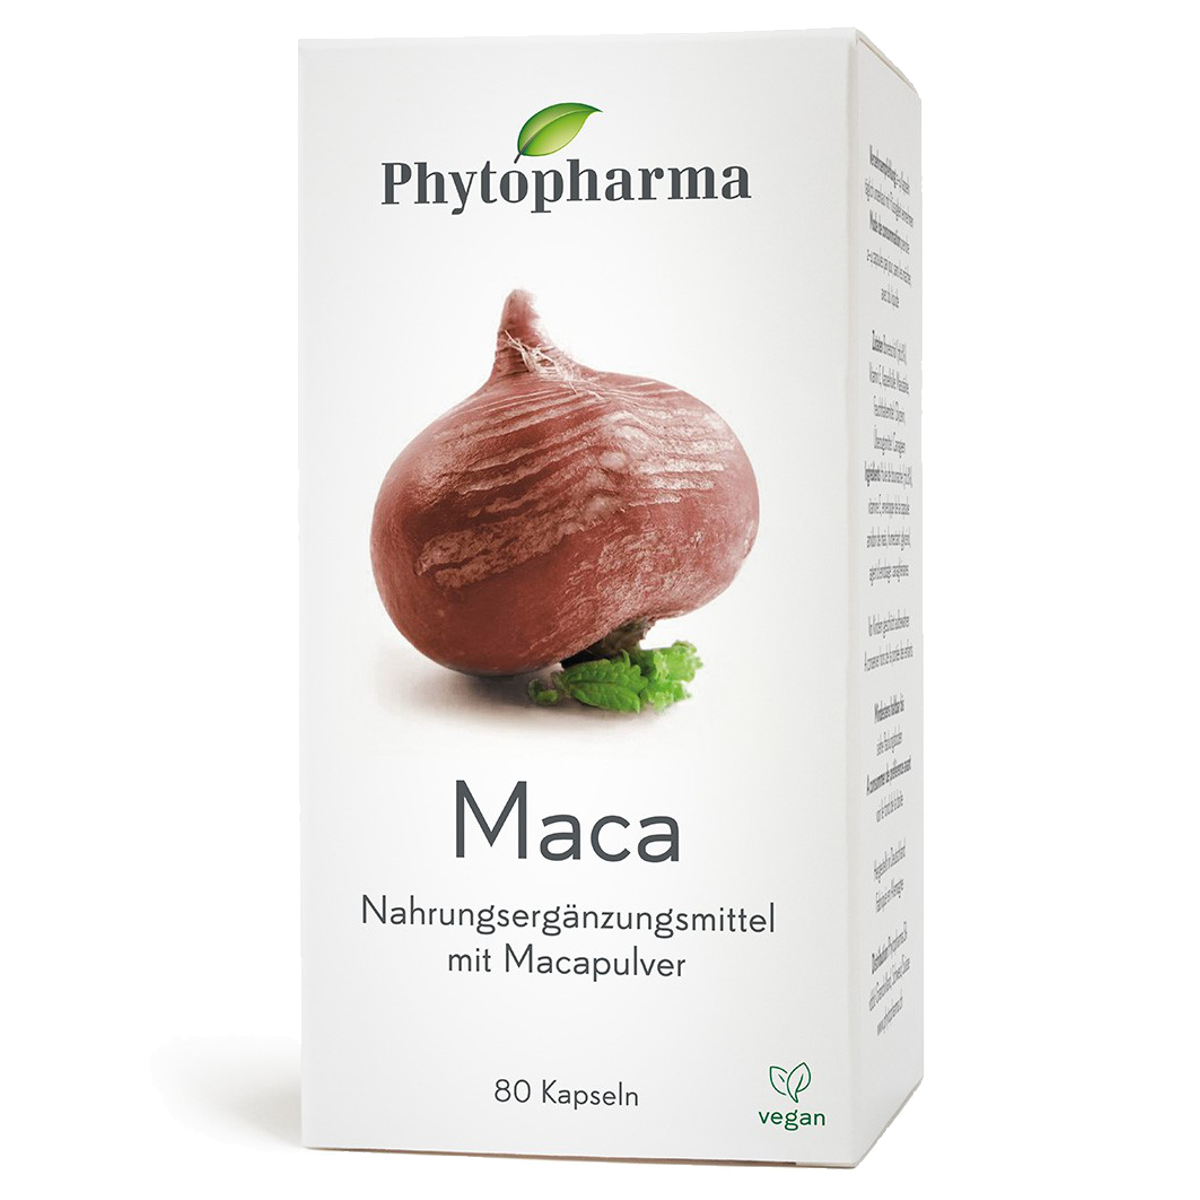 Die Phytopharma Maca Kapseln werden aus dem Pulver der peruanischen Maca-Wurzel hergestellt.